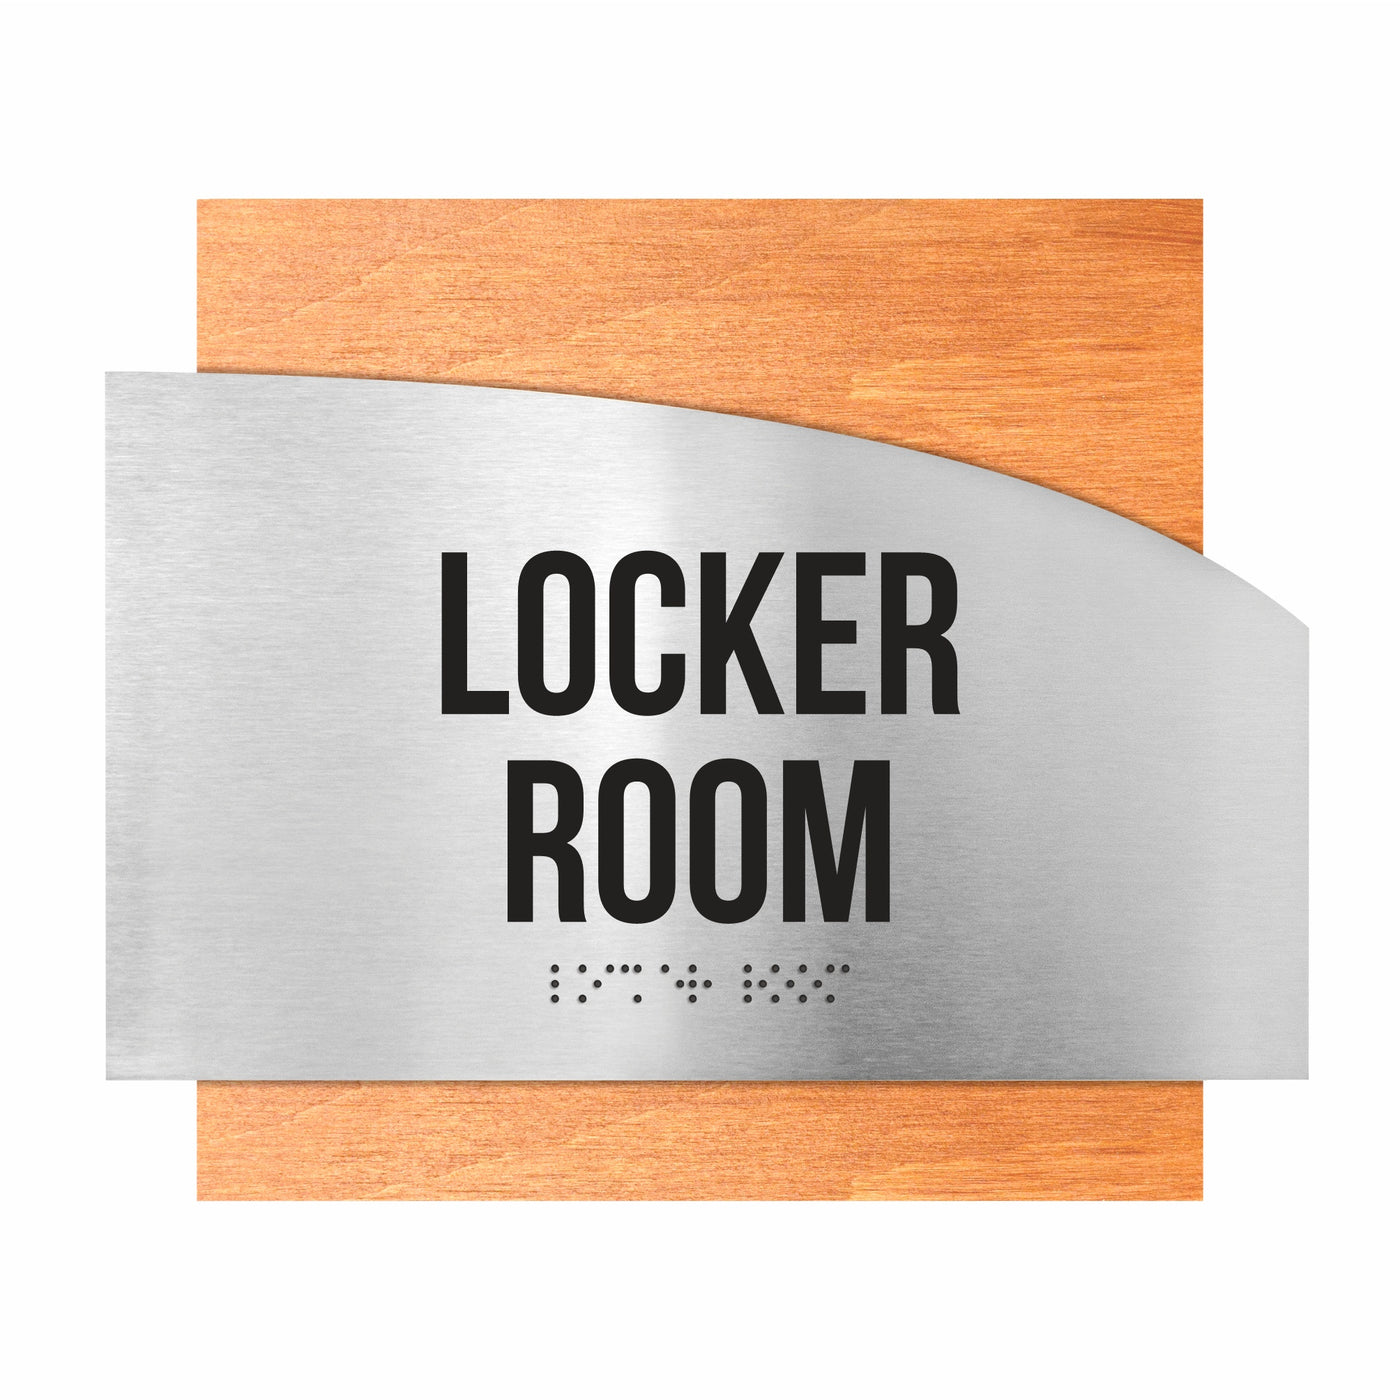 Door Signs - Locker Room Signs - Stainless Steel & Wood Plate - "Wave" Design